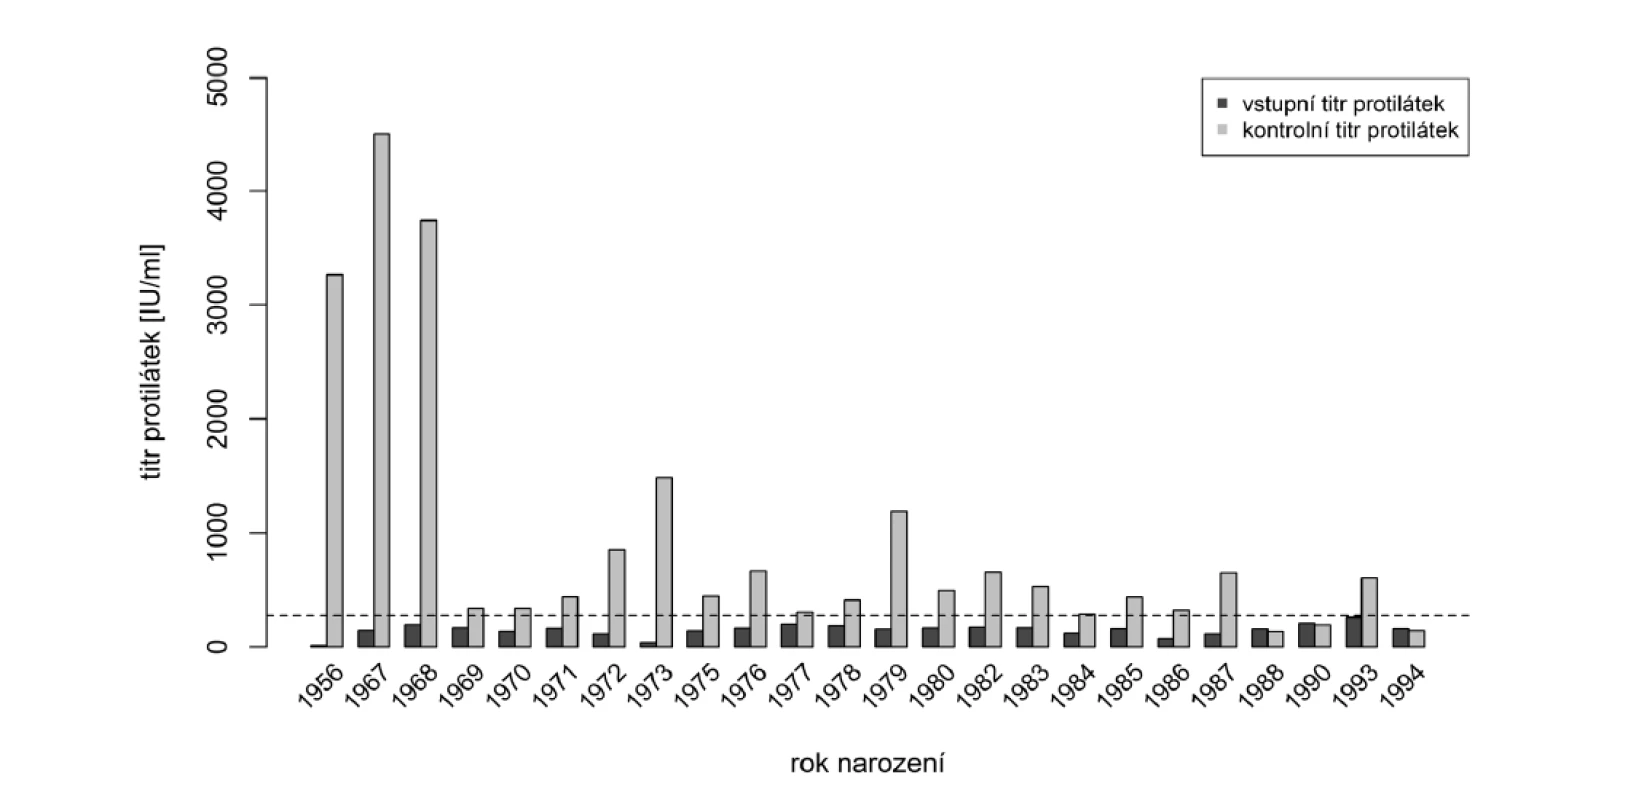 Vstupní a kontrolní hladiny protilátek po přeočkování s ohledem na rok narození (hraniční hodnota séropozitivity
naznačena přerušovanou čárou)<br>
Figure 3. Baseline and post-booster antibody levels in relation to year of birth (seropositivity cut-off is indicated by
dashed line)